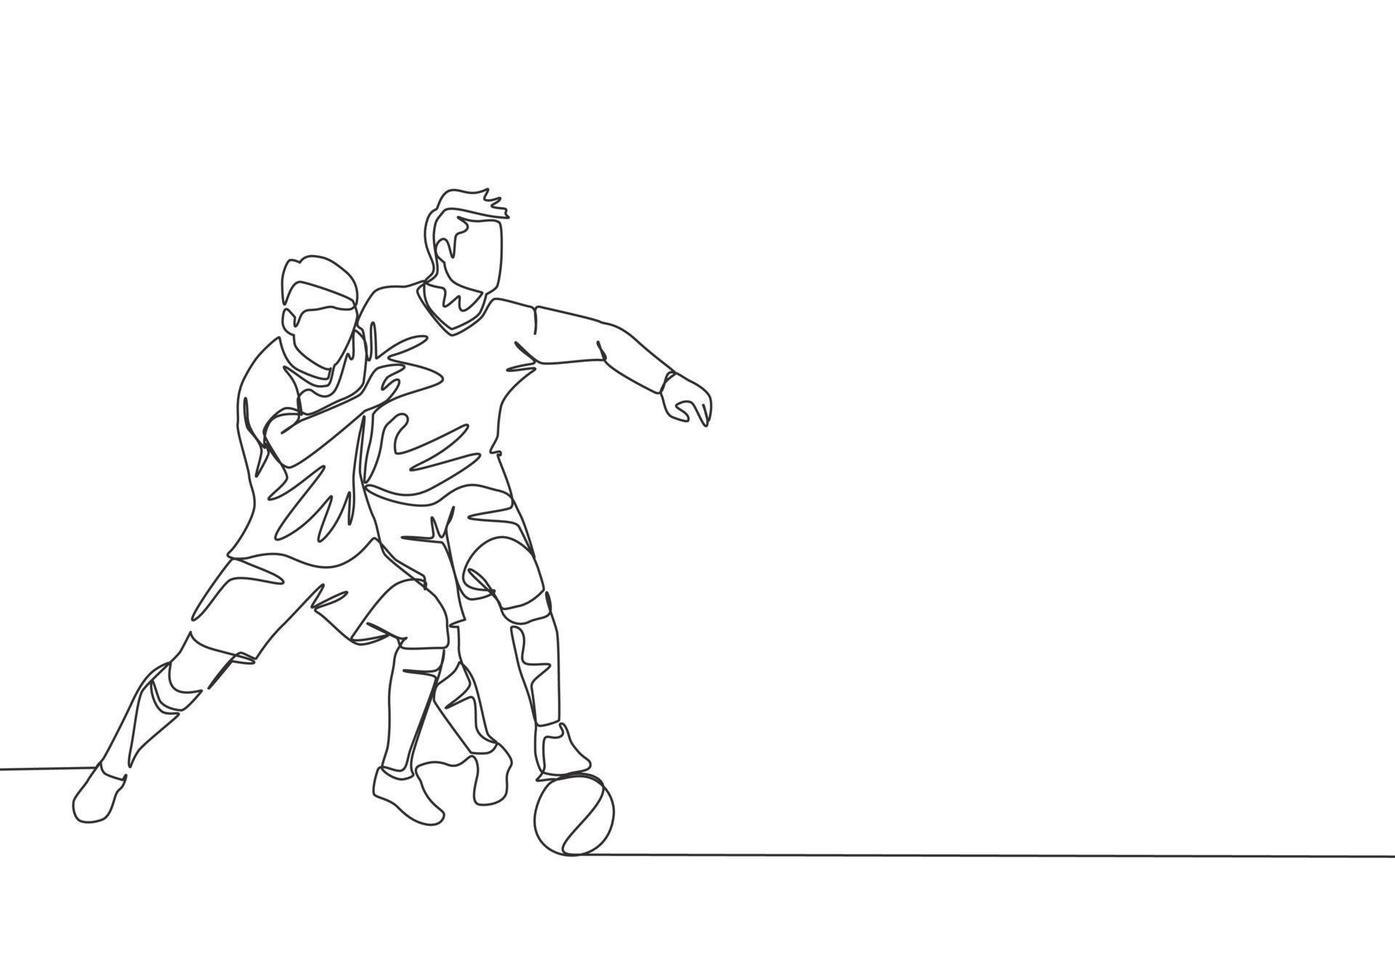 ett kontinuerlig linje teckning av två ung energisk fotboll spelare stridande för de boll på de spel. fotboll match sporter begrepp. enda linje dra design vektor illustration